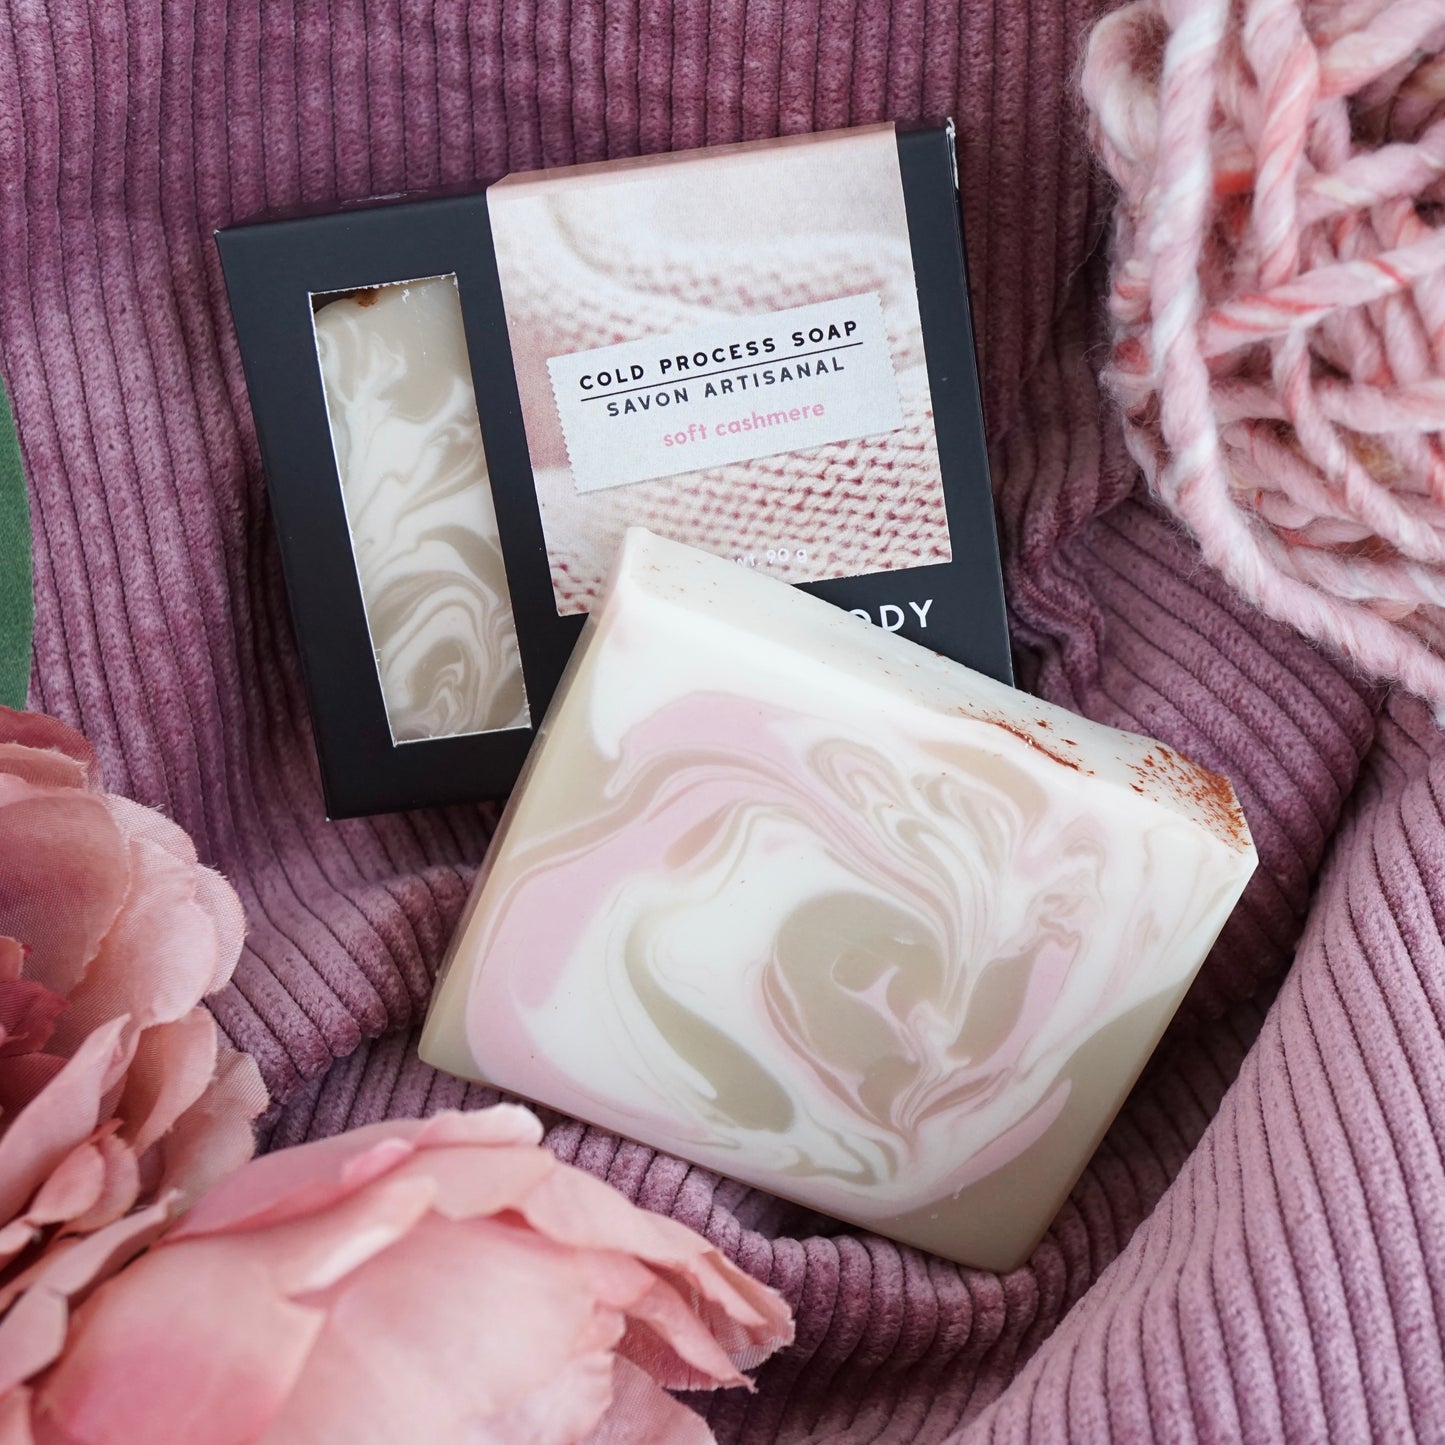 Soft Cashmere Cold Process Soap